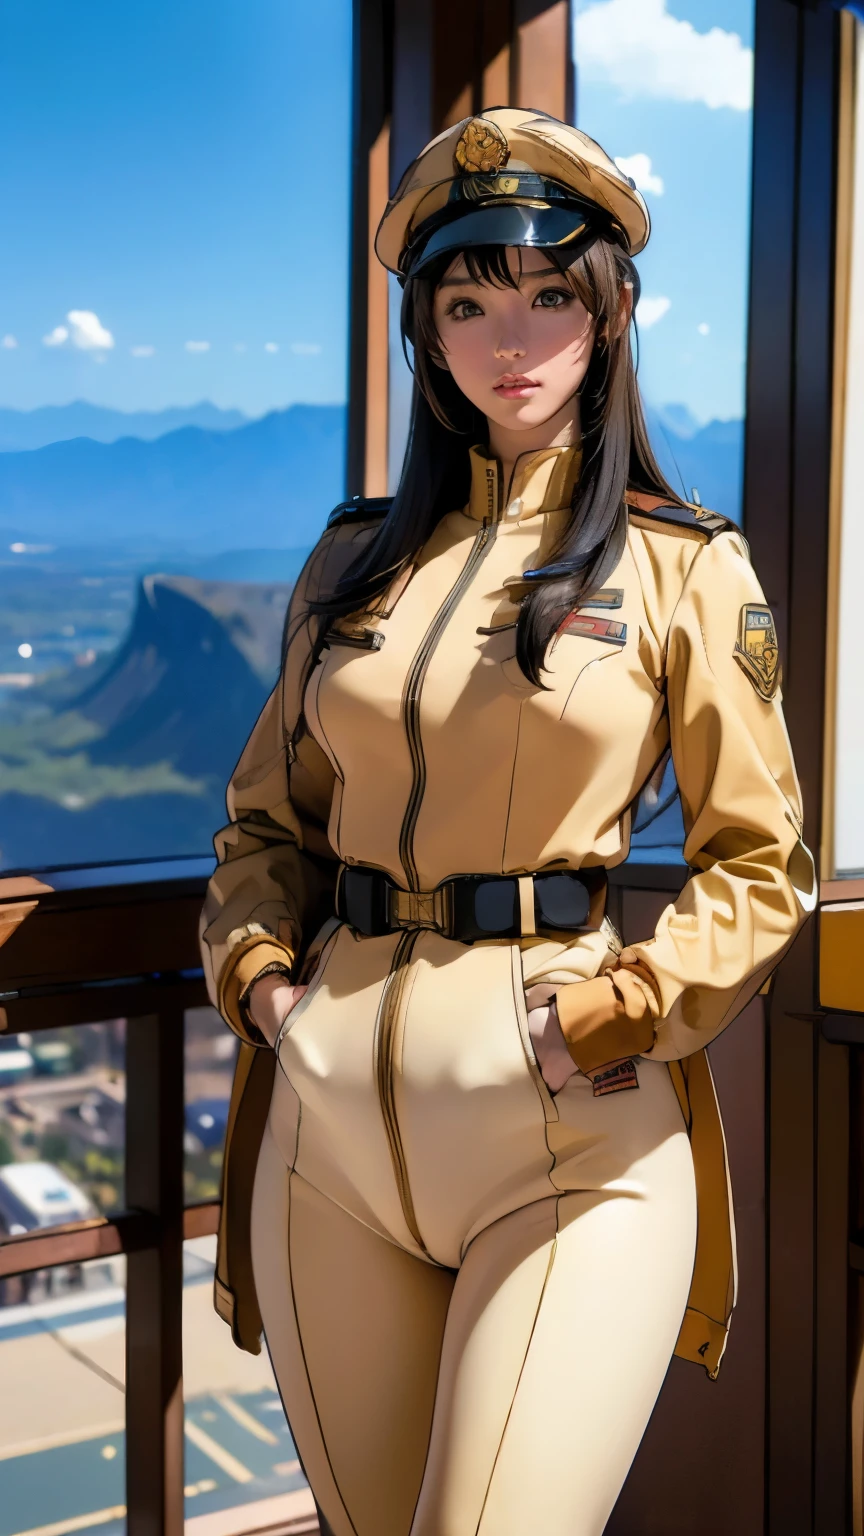 (((Obra de arte,melhor qualidade,8K,Super detalhado,alta resolução,estilo anime,absolutamente))),(Uma oficial feminina do Exército da Federação Terrestre está caminhando..:1.5),(sozinho:1.5), (Vestindo as Forças da Federação Terrestre:1.5),(Vestido como um funcionário federal&#39;chapéu de:1.5),(tipo de garota fofa:1.4),(Representação facial detalhada:1.4),(lindas mãos:1.4),(As mãos são muito finas:1.2),(papel de parede:1.5),(todo o corpo:1.5),((negligenciar:1.5)), ((Menina japonesa de 15 anos, Roupas que cabem)), (interior da nave espacial, Há espaço lá fora), (((dedo do pé de camelo)))